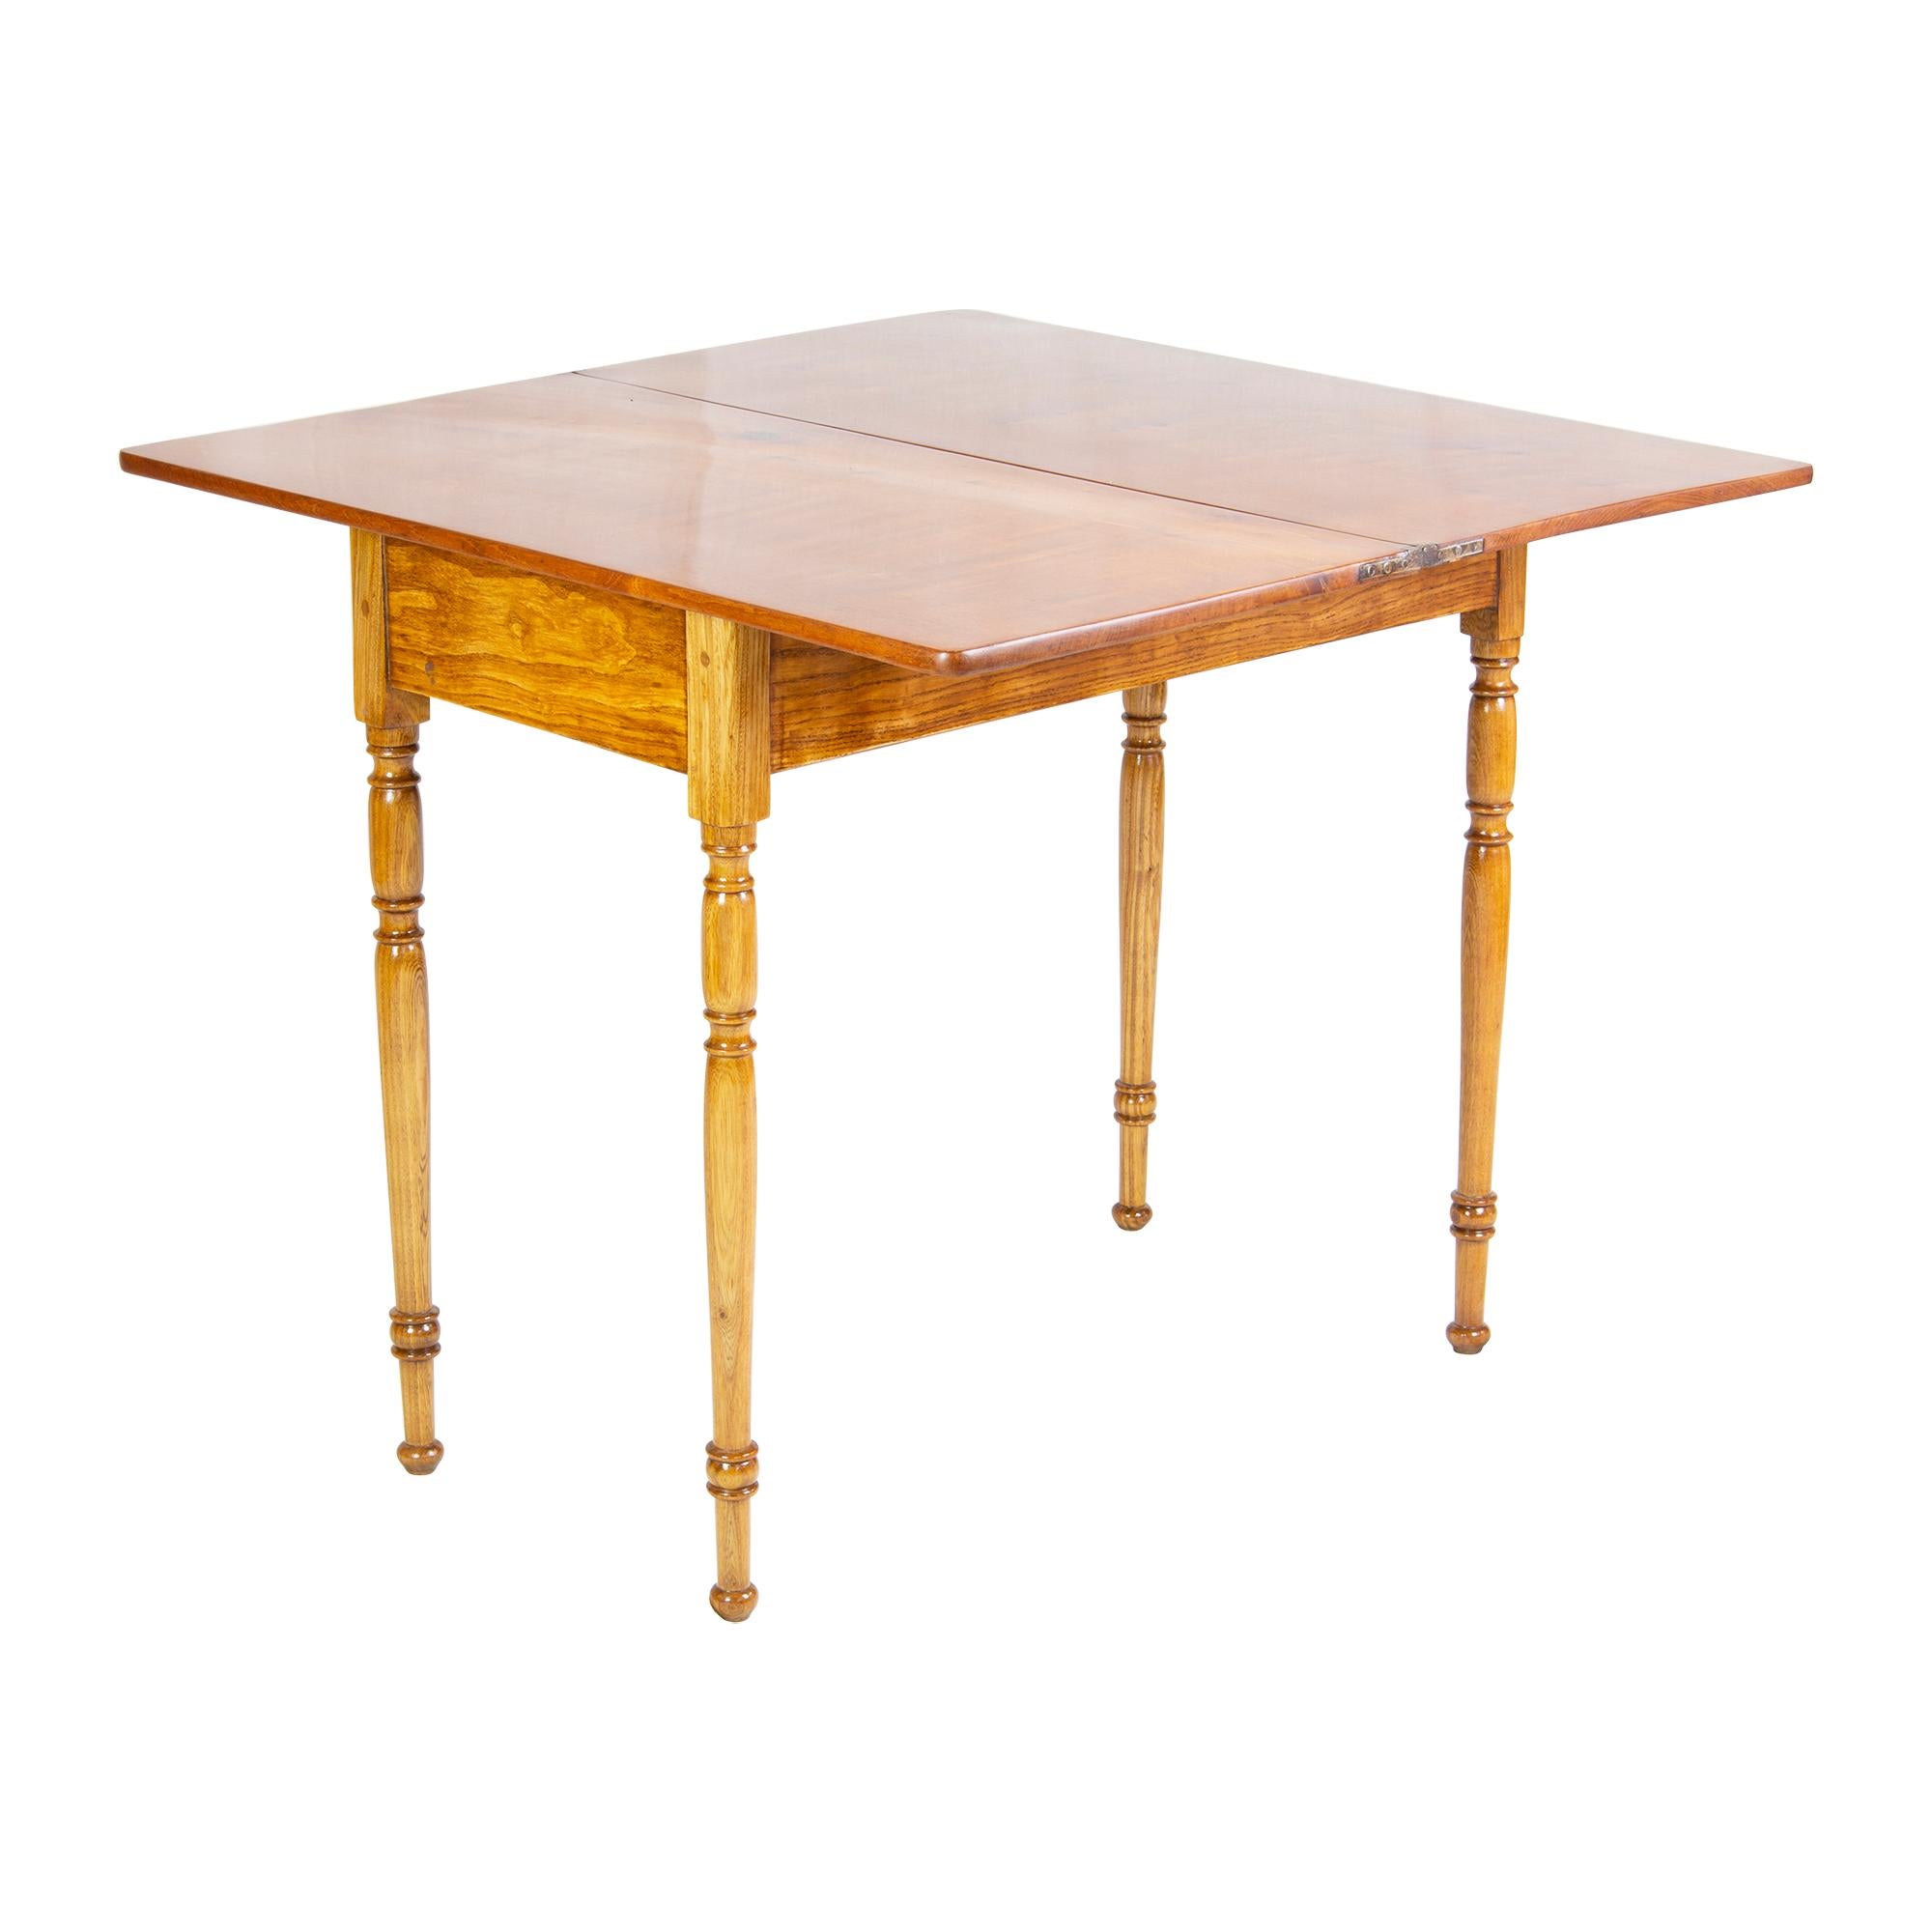 Kleiner Spiel- oder Konsolentisch aus Eschenholz. Der Tisch stammt aus der Zeit des späten Biedermeiers um 1850. Die Tischplatte kann um 90° gedreht und damit aufgeklappt werden. Dadurch erhöht sich die Tiefe des Tisches von 42 cm auf 84 cm. Der